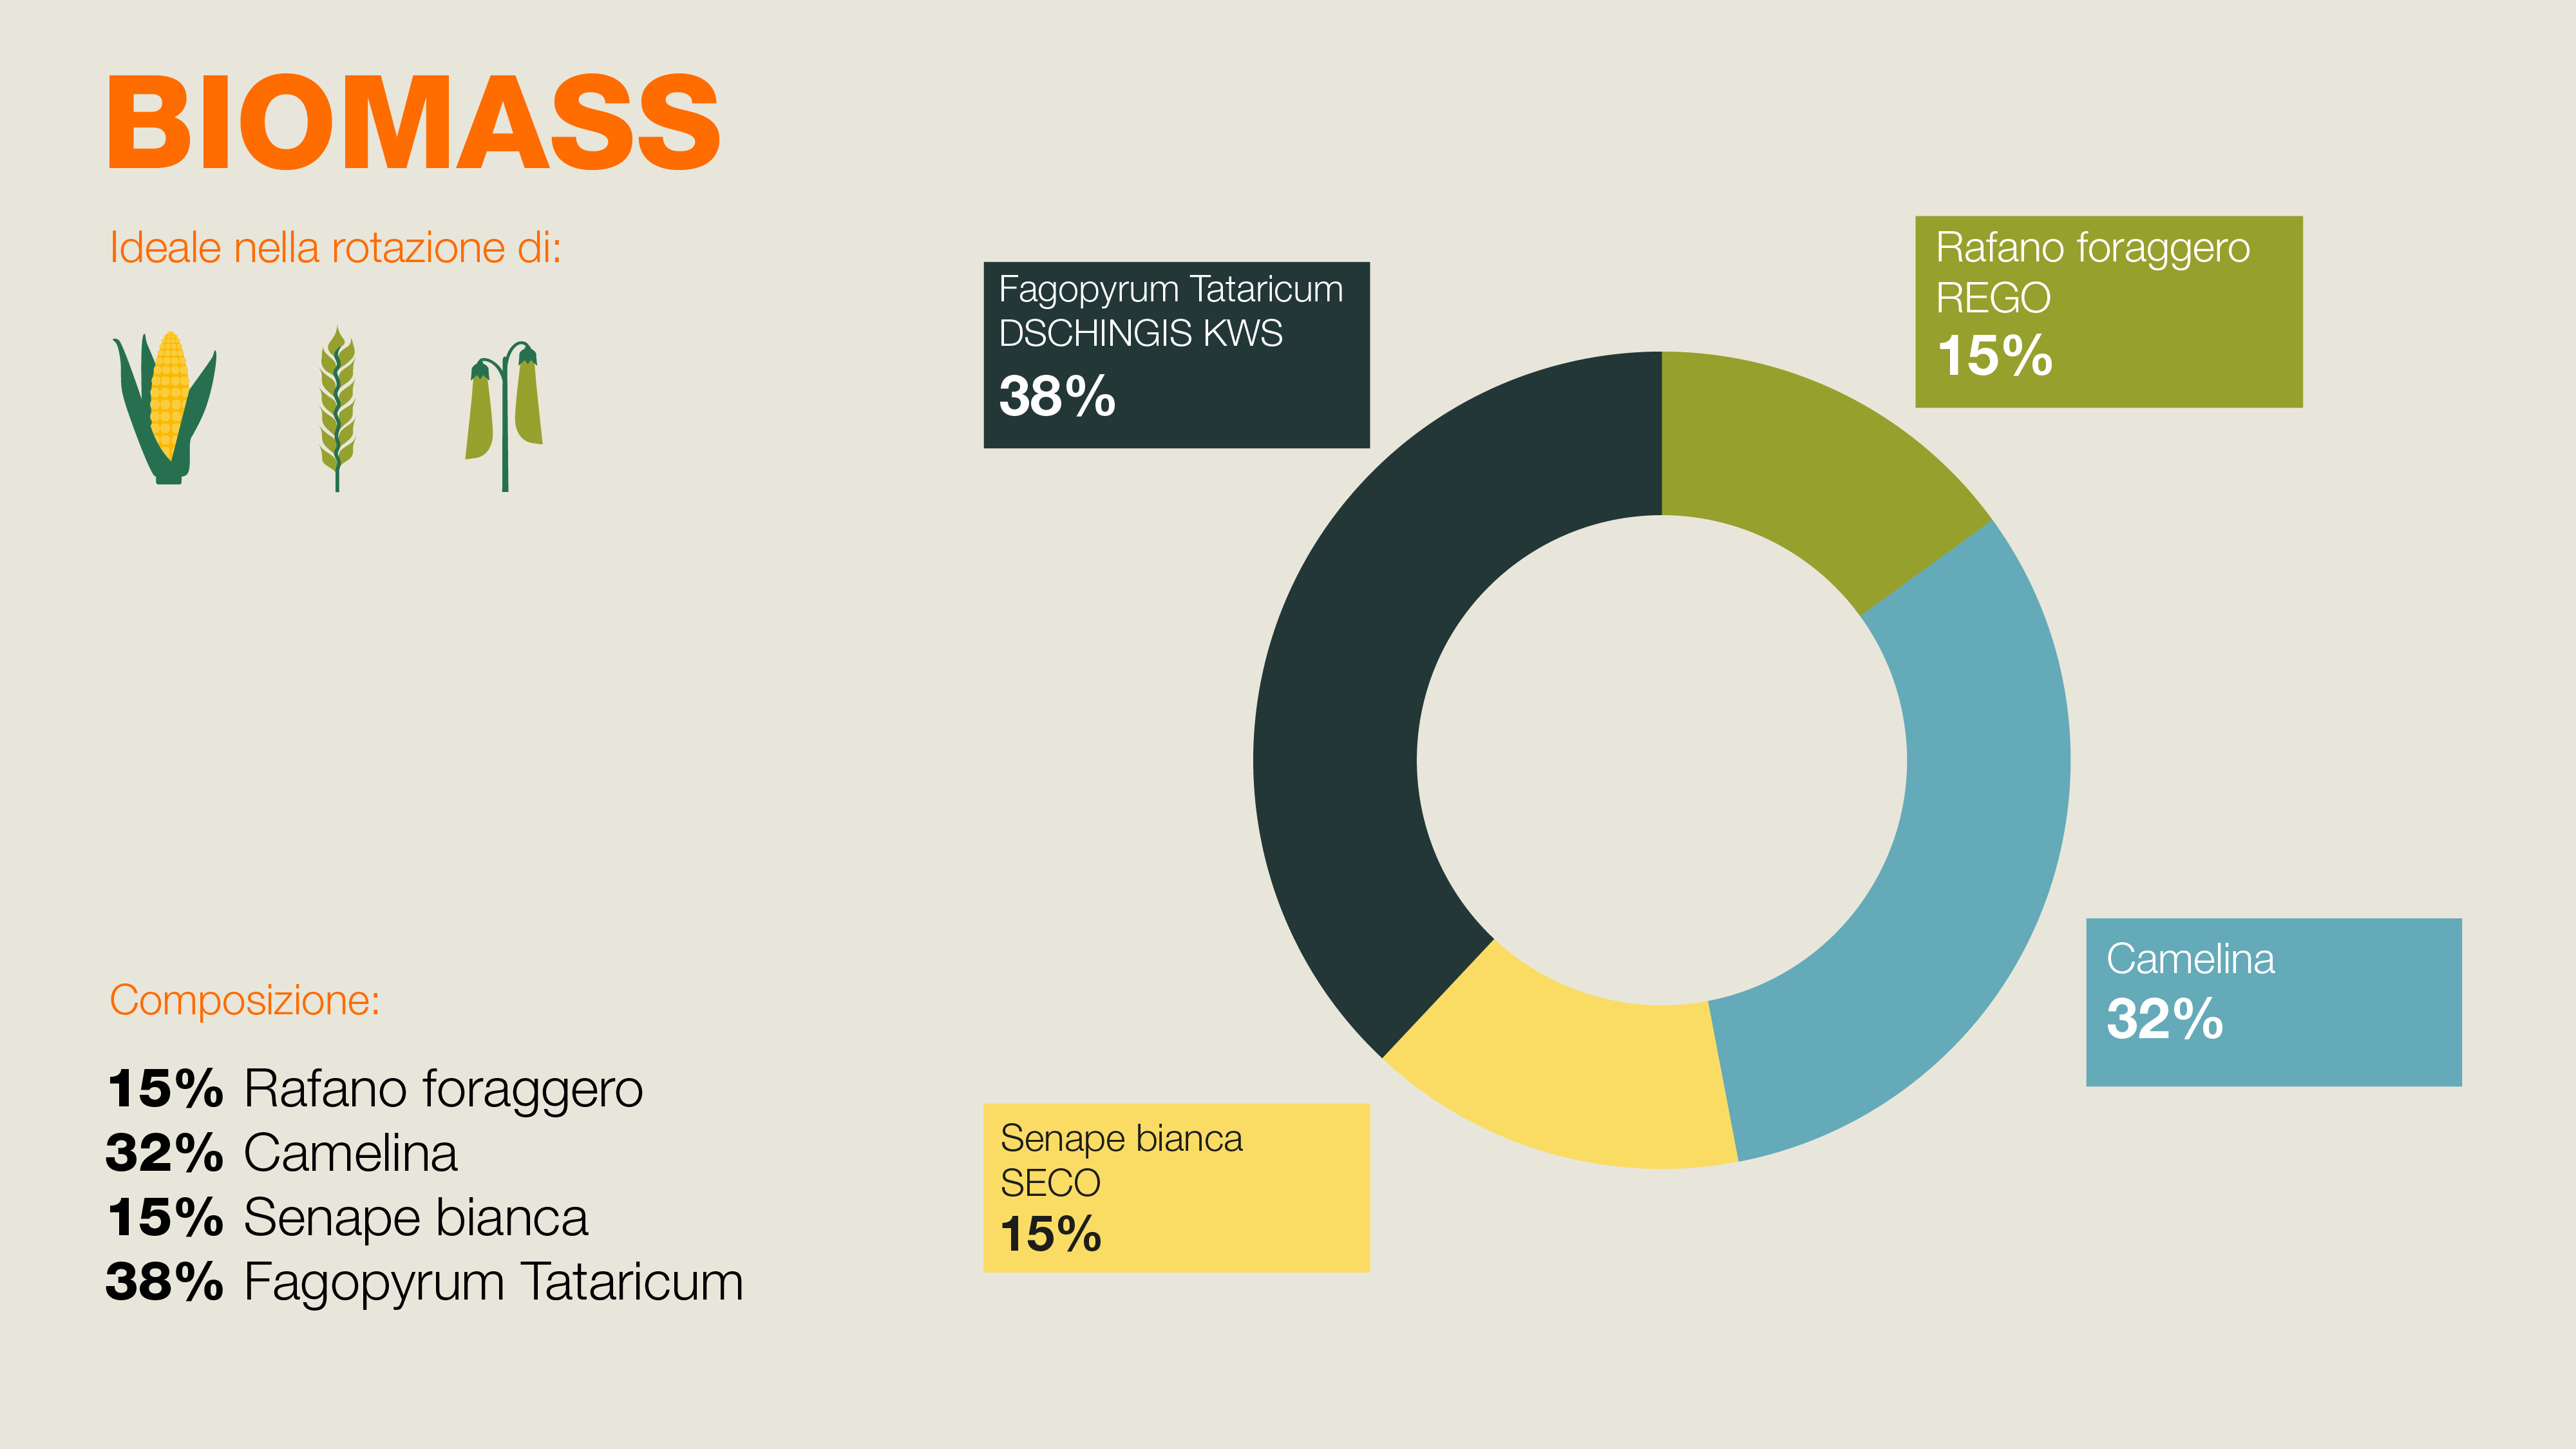 Composizione di BIOMASS - 15% rafano foraggero, 32% Camelina, 15% Senape bianca, 38% Fagopyrum Tataricum